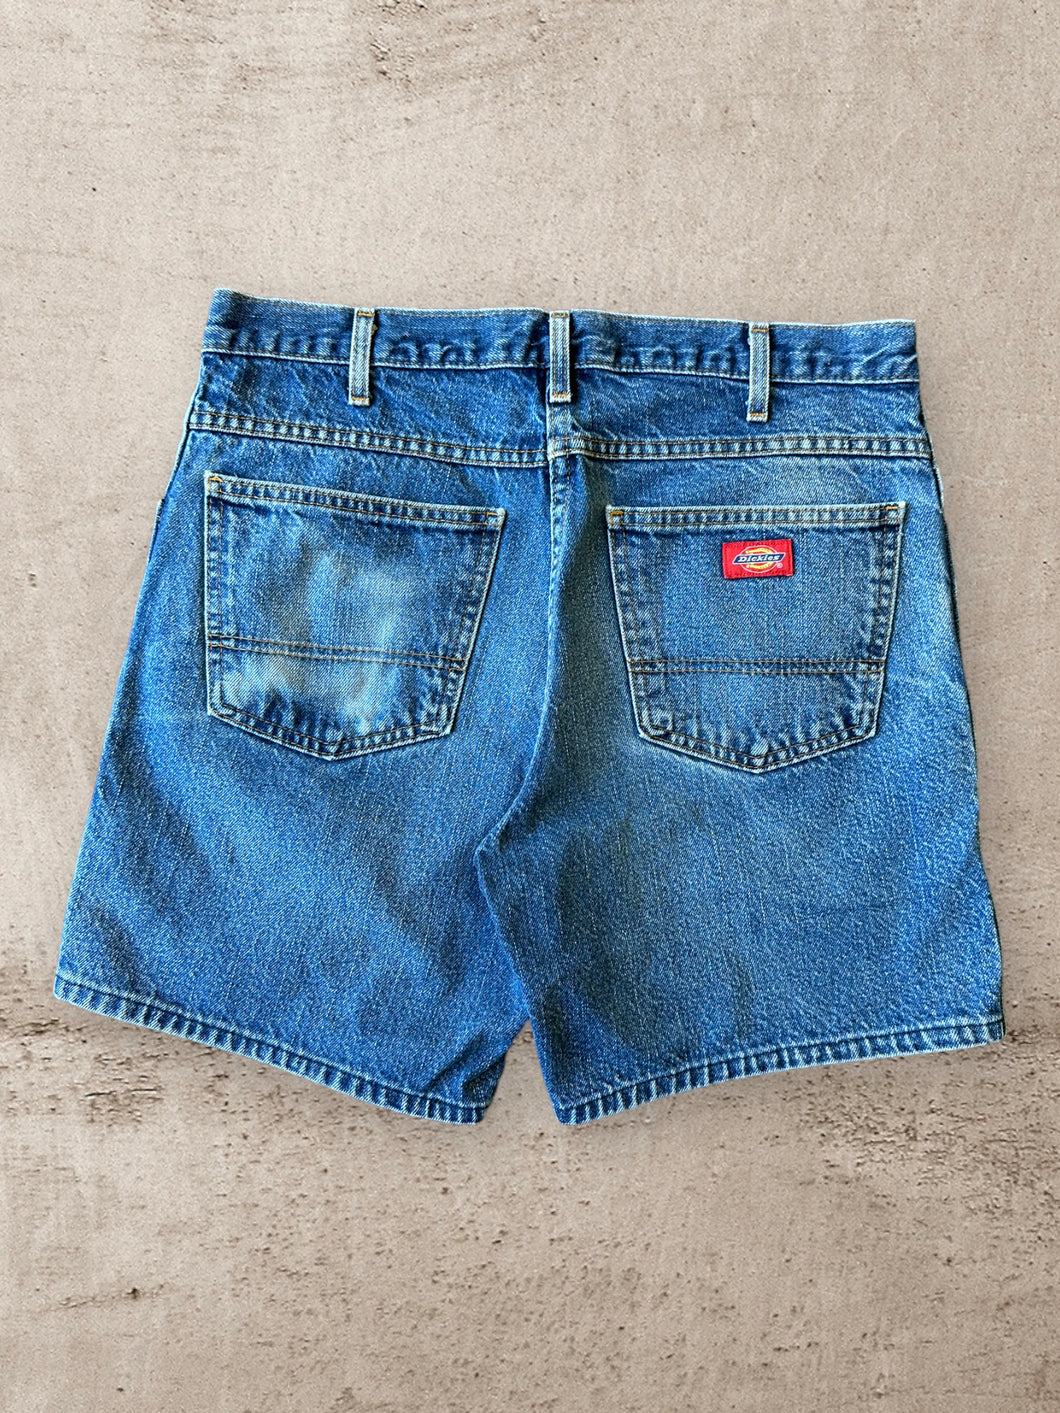 Vintage Dickies Jean Shorts - 34”